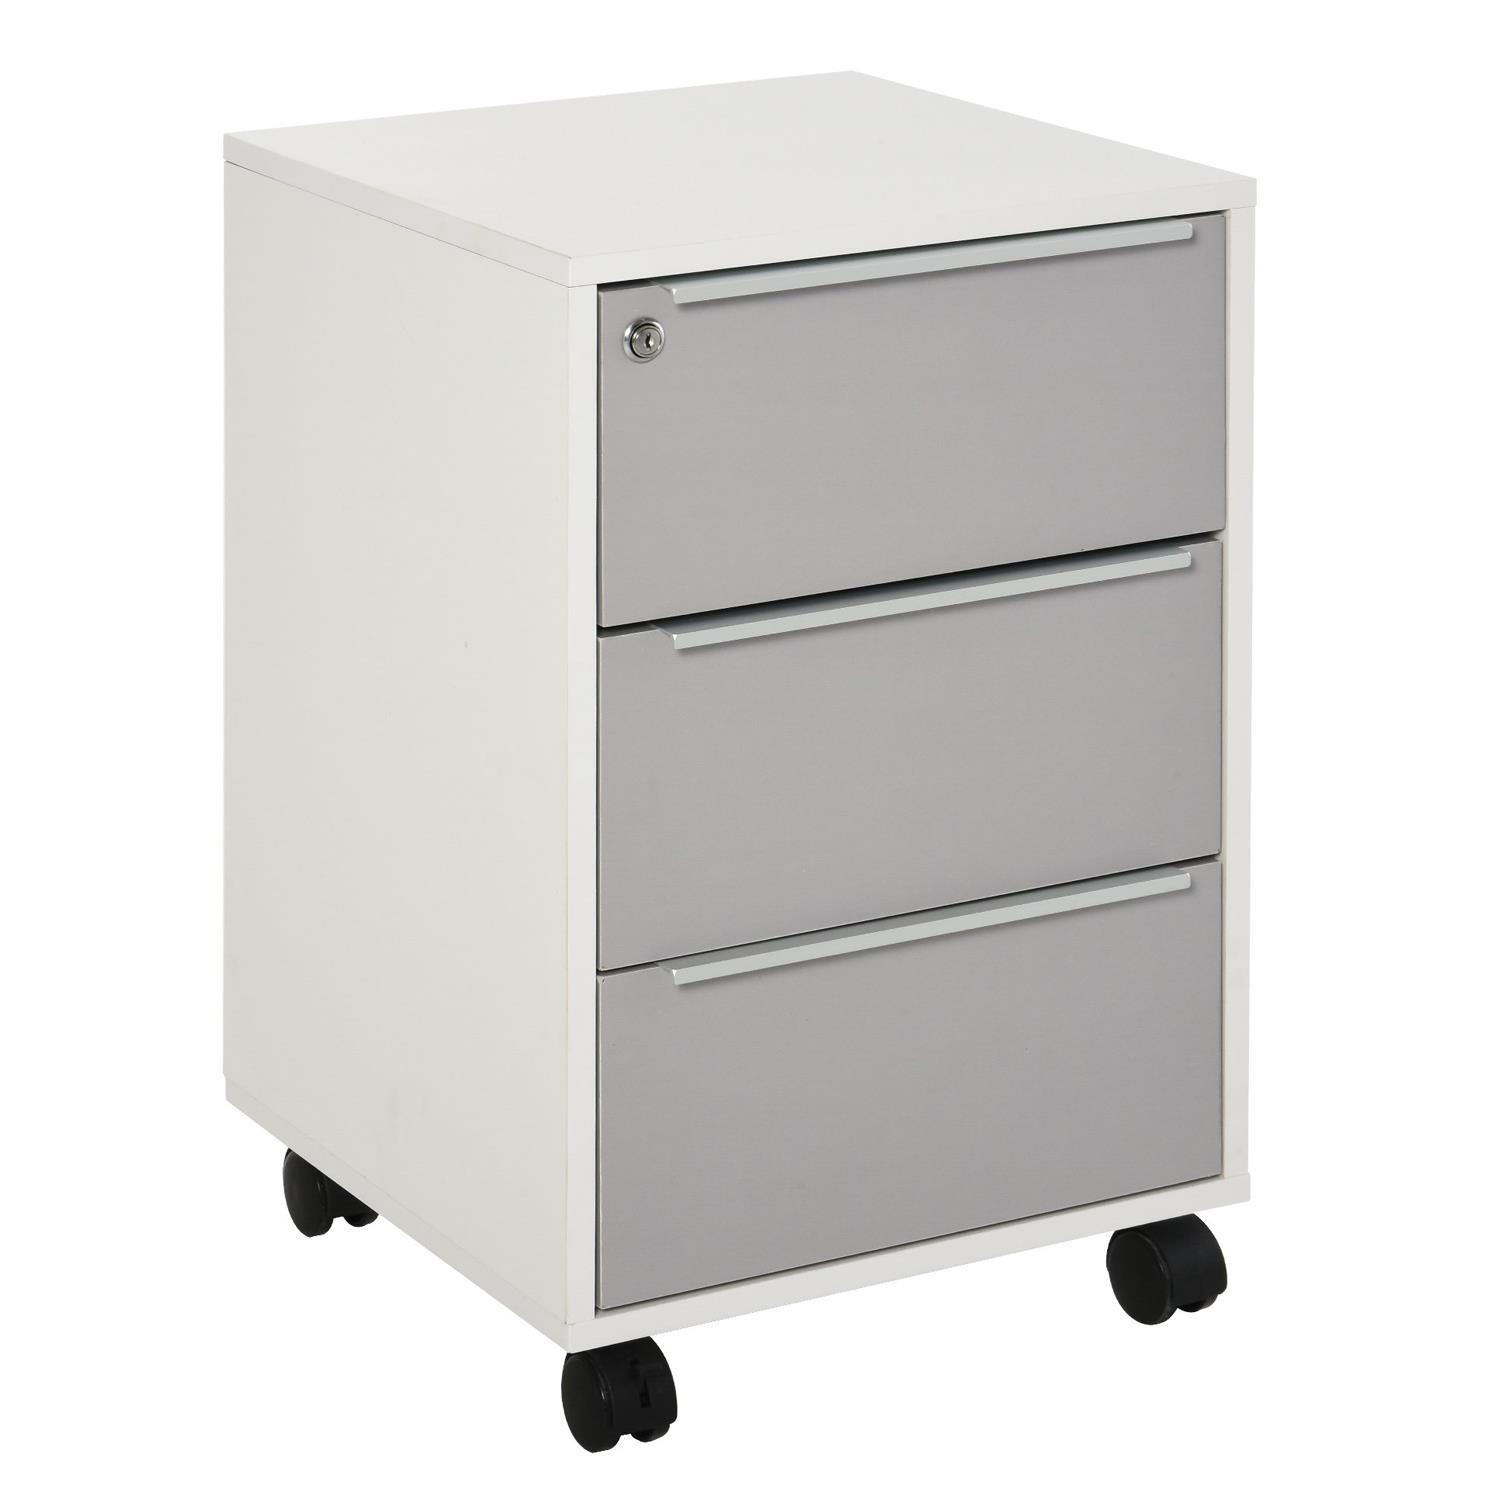 Büroschrank HAVANNA, Schreibtischcontainer, mit 3 Schubladen, 40x40x63,5 cm, Farbe Weiß und Grau